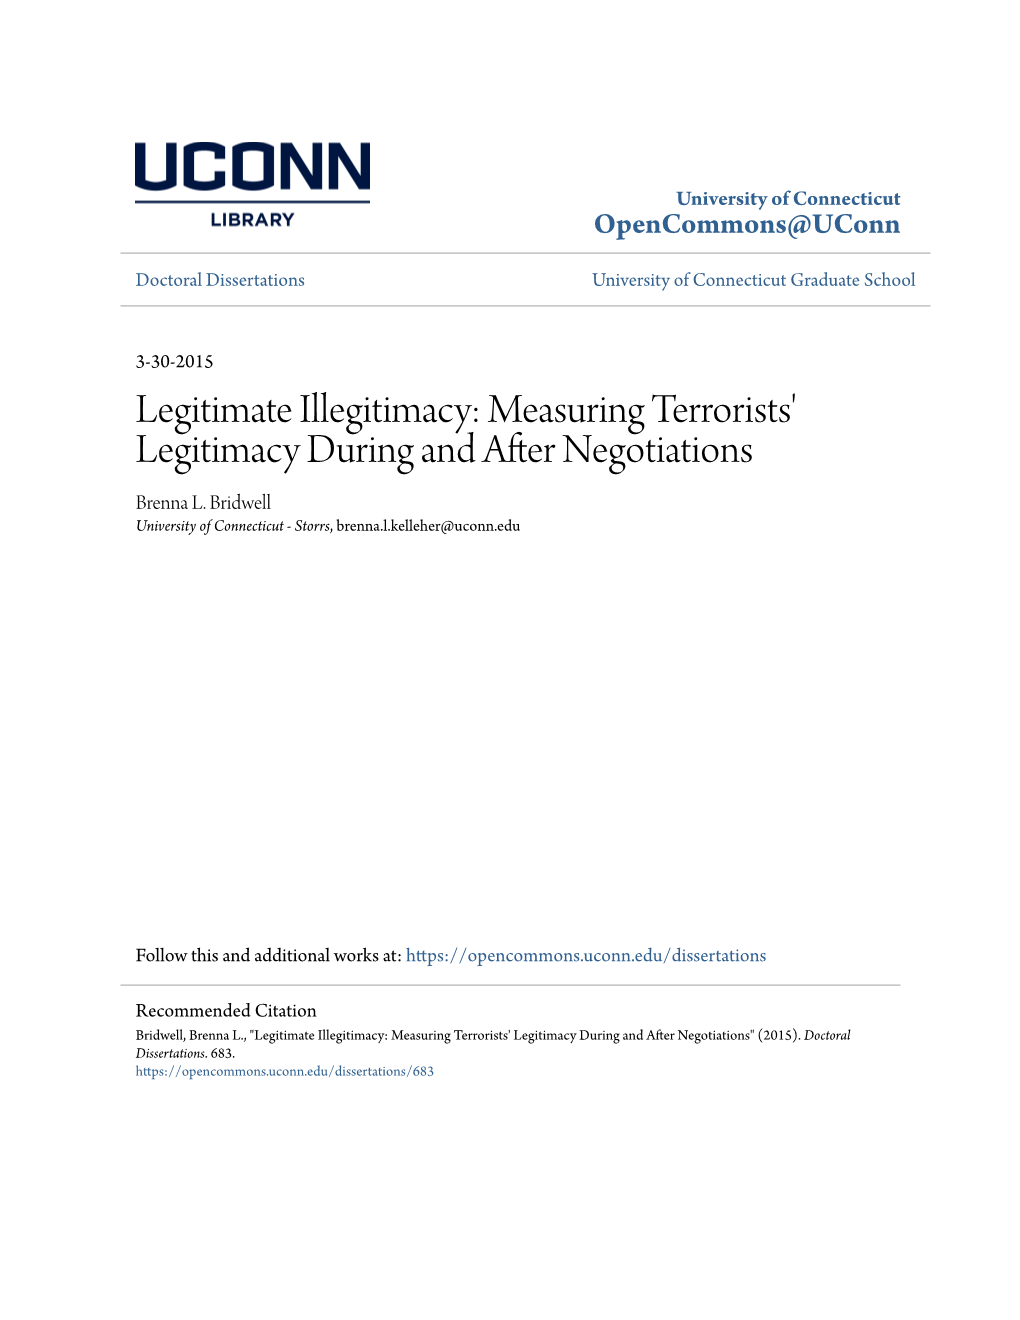 Legitimate Illegitimacy: Measuring Terrorists' Legitimacy During and After Negotiations Brenna L